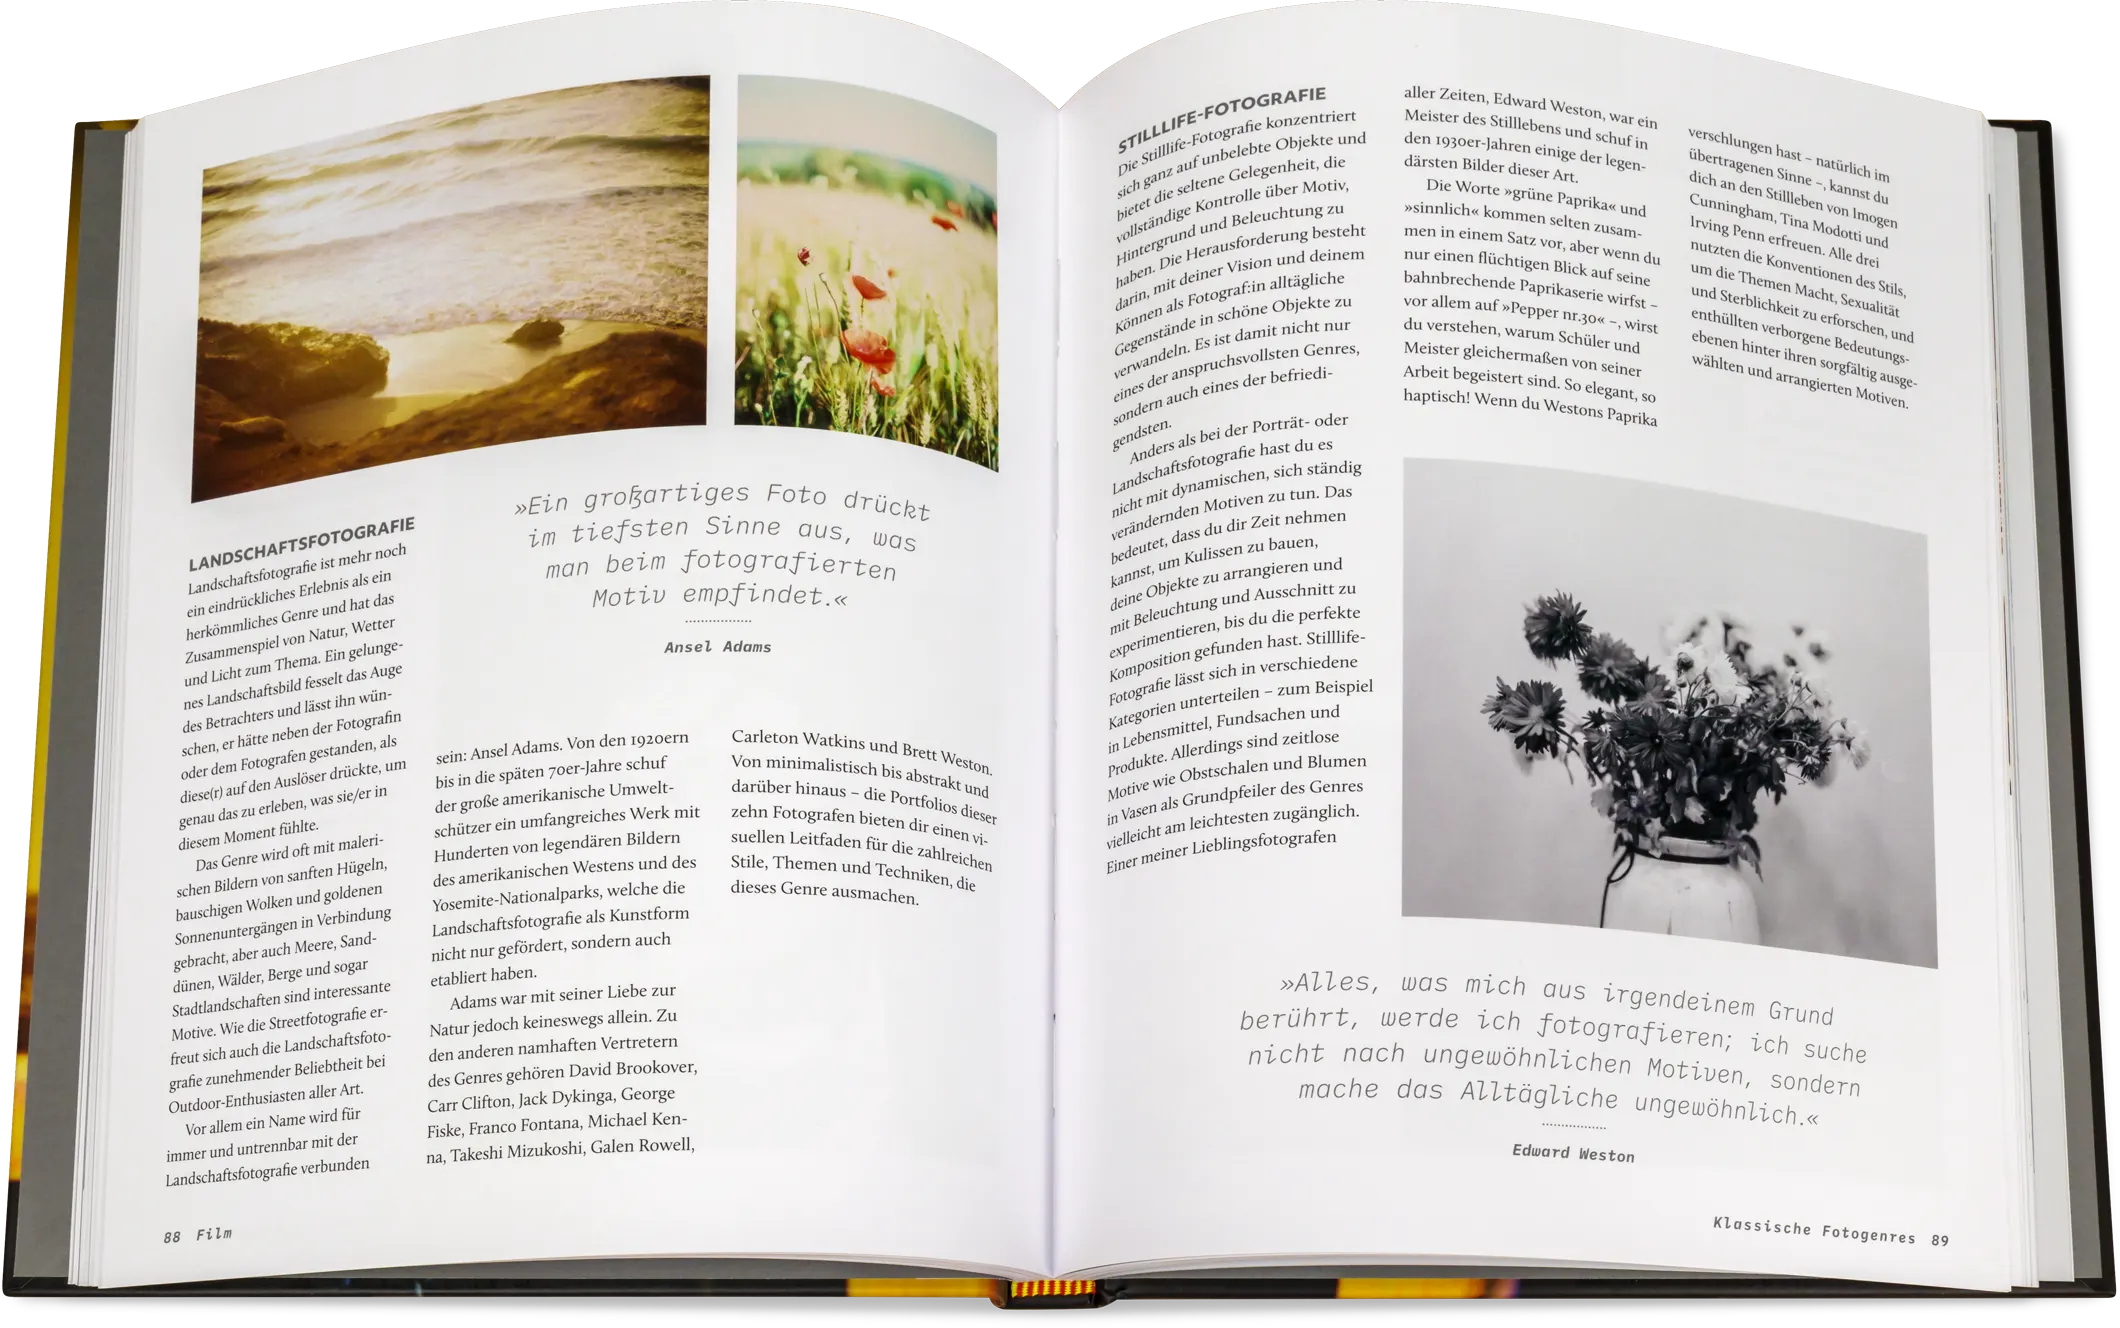 Blick ins Buch: Analog fotografieren - Der praktische Einstieg